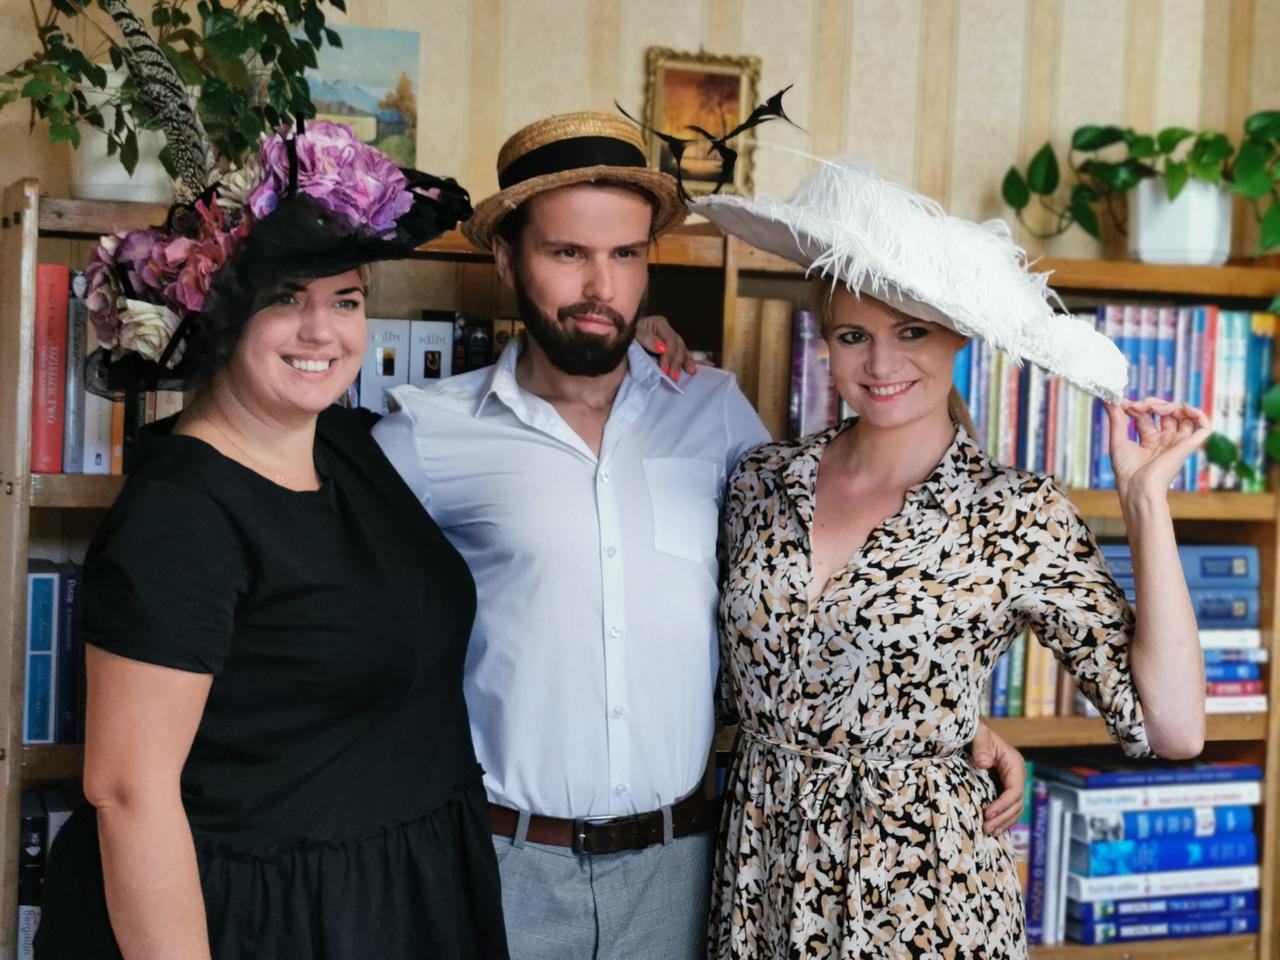 Kaliscy bibliotekarze przygotowują wyjątkowe kapelusze!